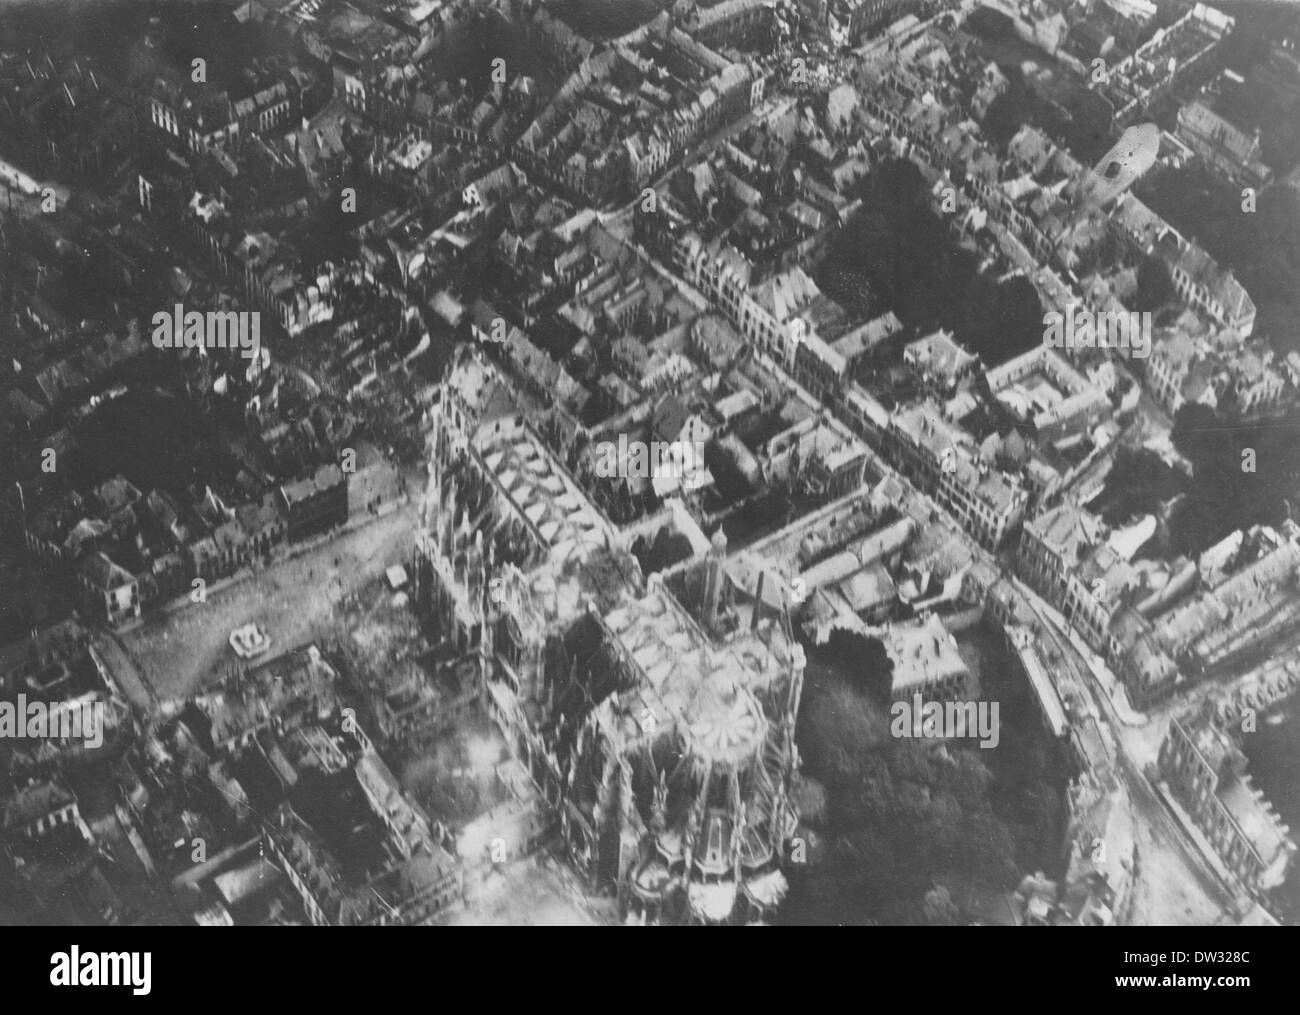 Deutsche Luftfotos zeigen die zerstörte Kathedrale entlang der Westfront während des Ersten Weltkriegs in St. Quentin, Frankreich, Datum unbekannt. Fotoarchiv für Zeitgeschichte - KEIN KABELDIENST Stockfoto